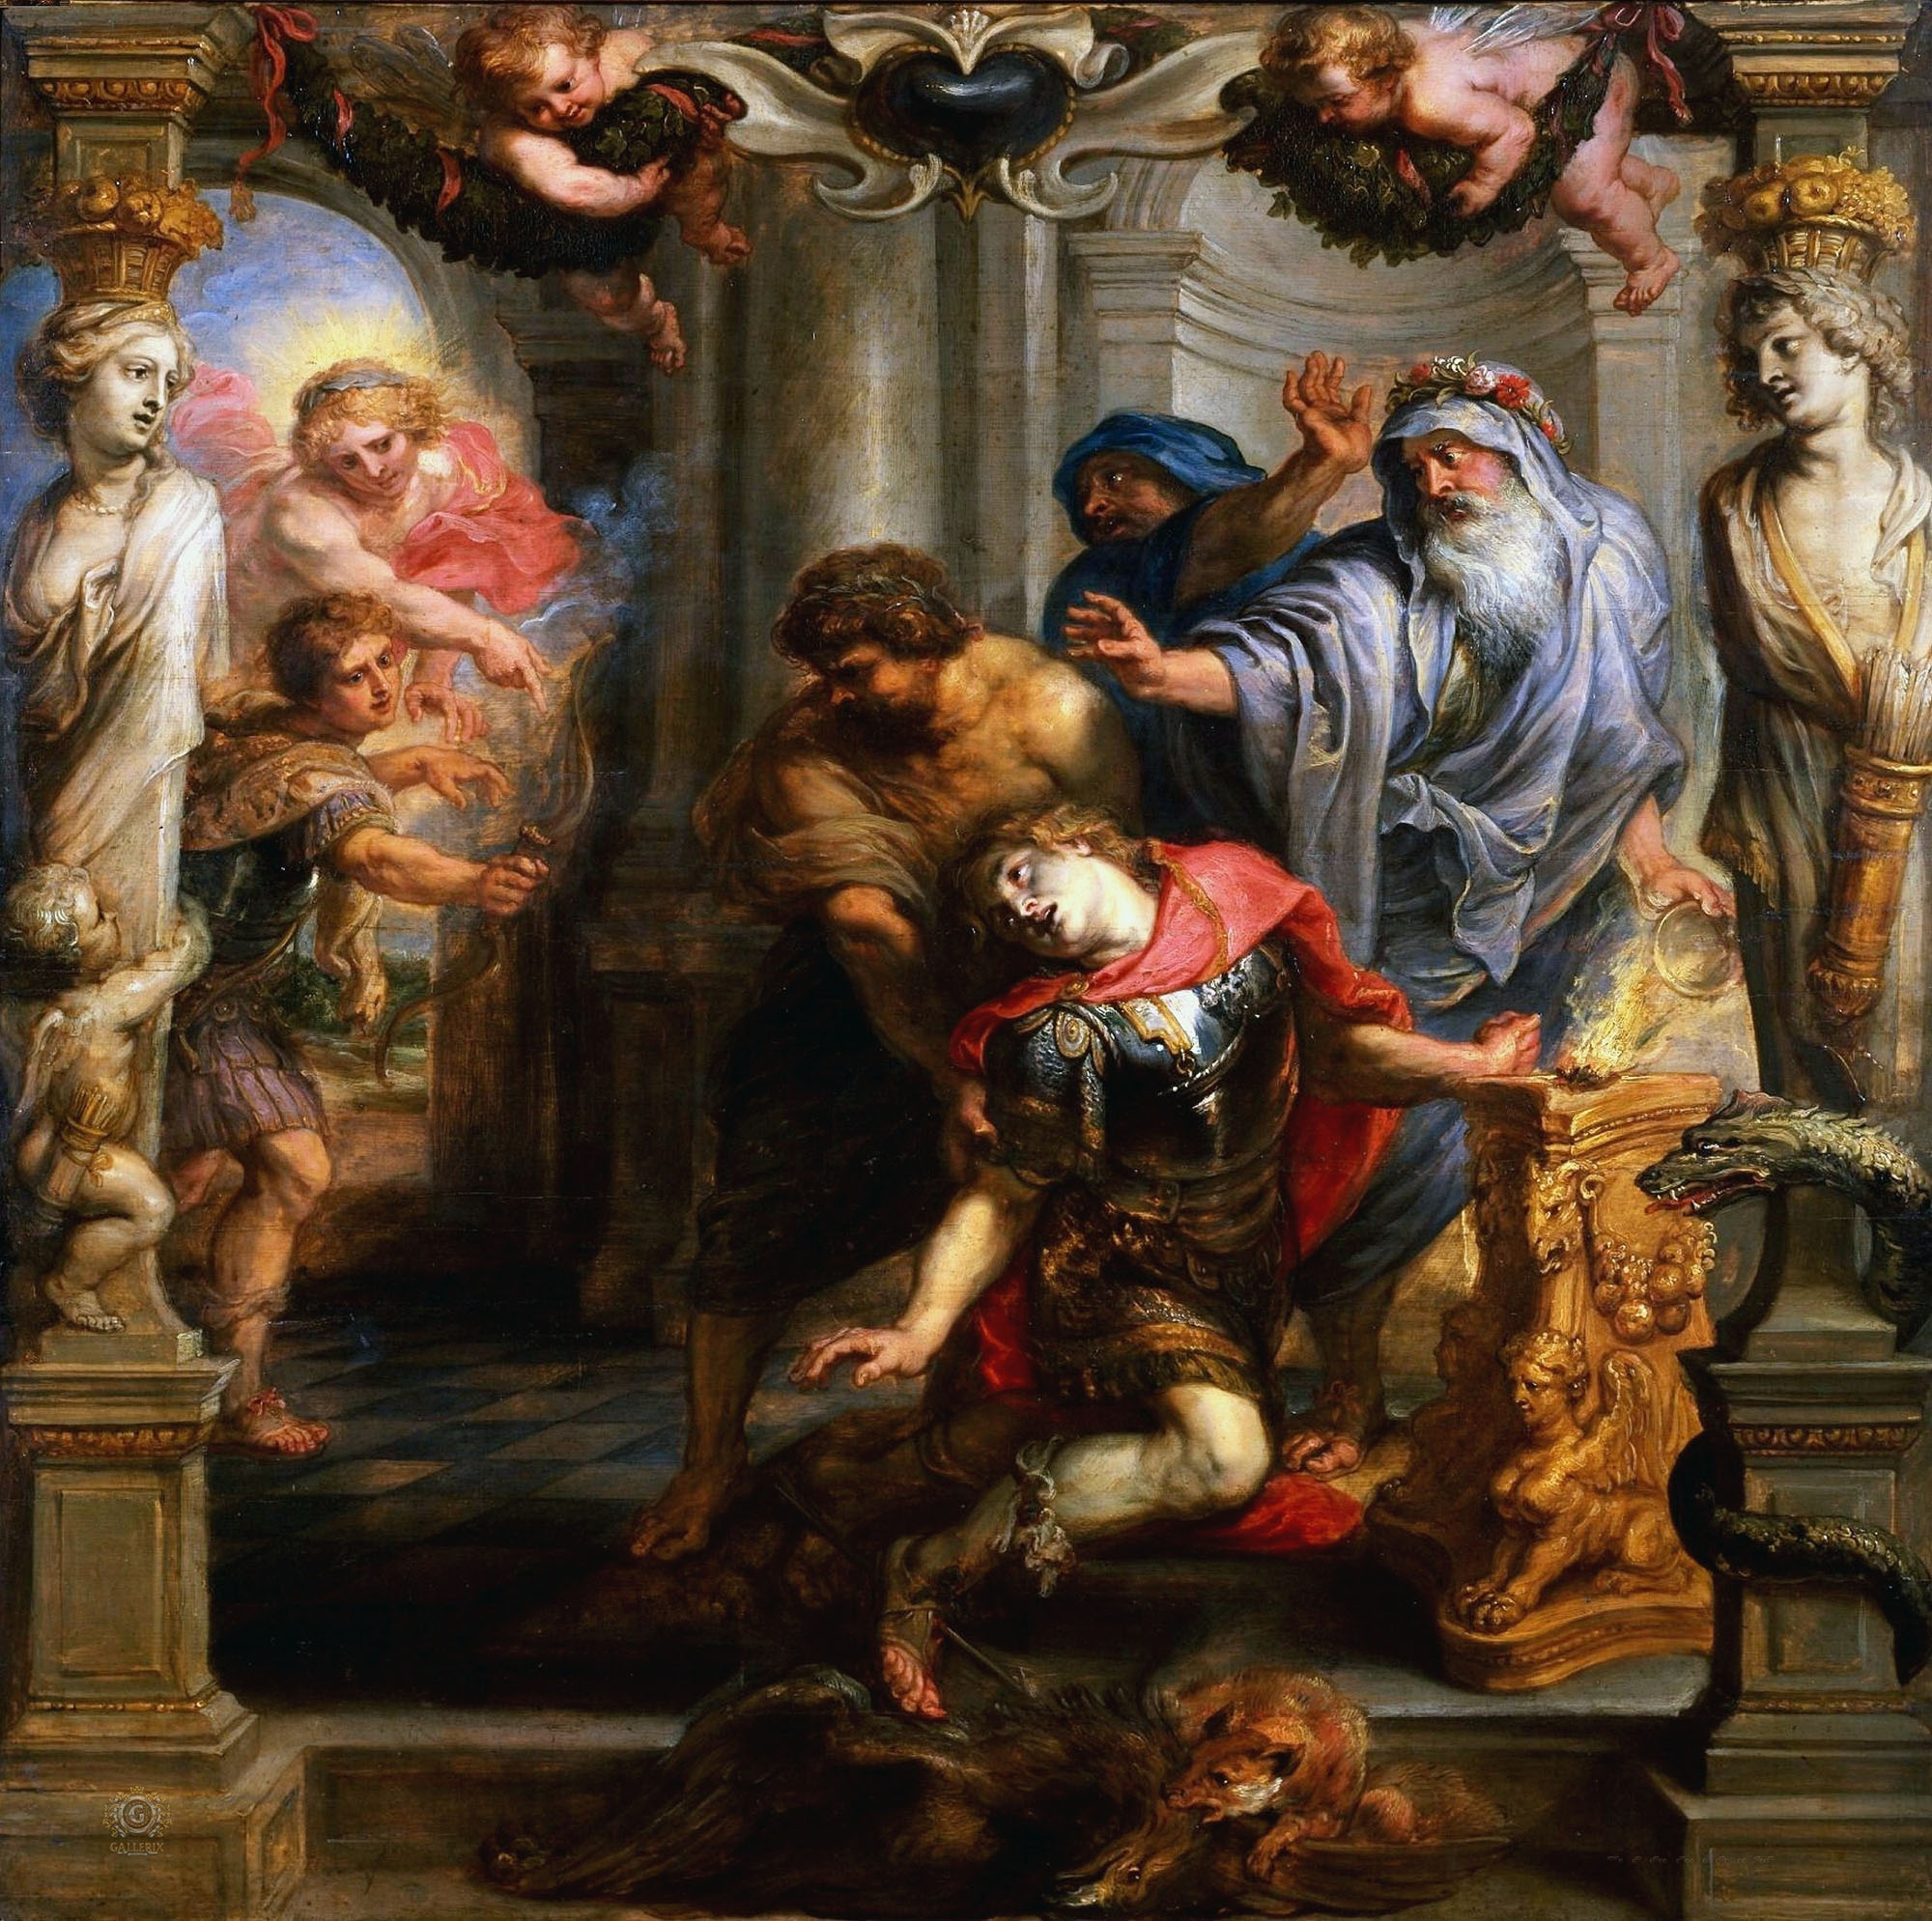 Питер Пауль Рубенс. "Смерть Ахиллеса". 1630-1635. Институт Курто, Лондон.